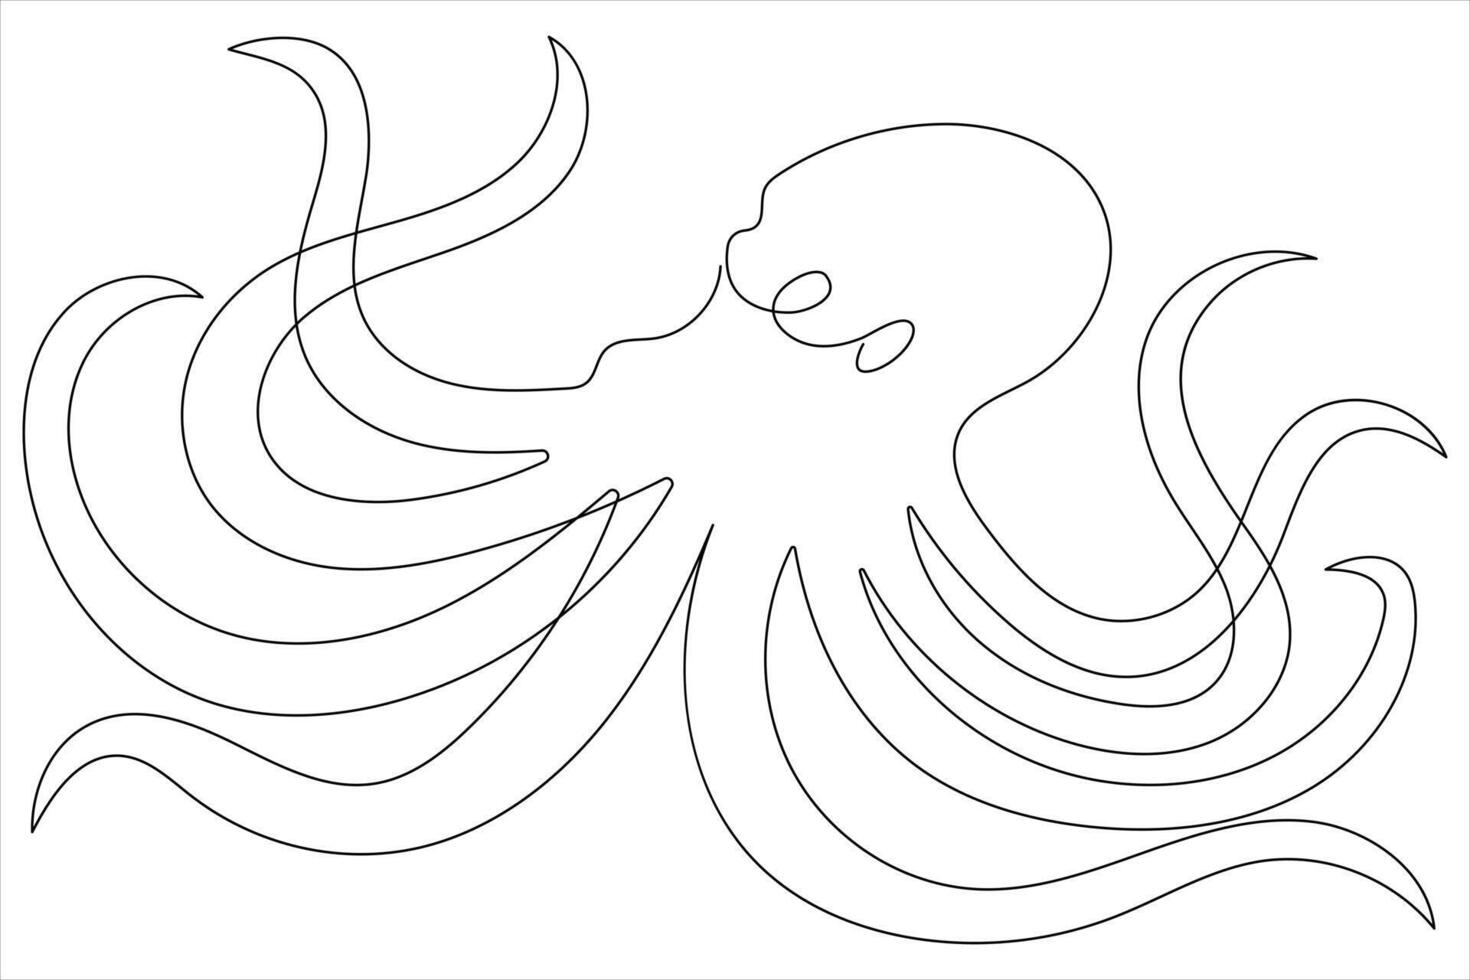 polvo mar animal contínuo 1 linha arte desenhando do esboço vetor ilustração